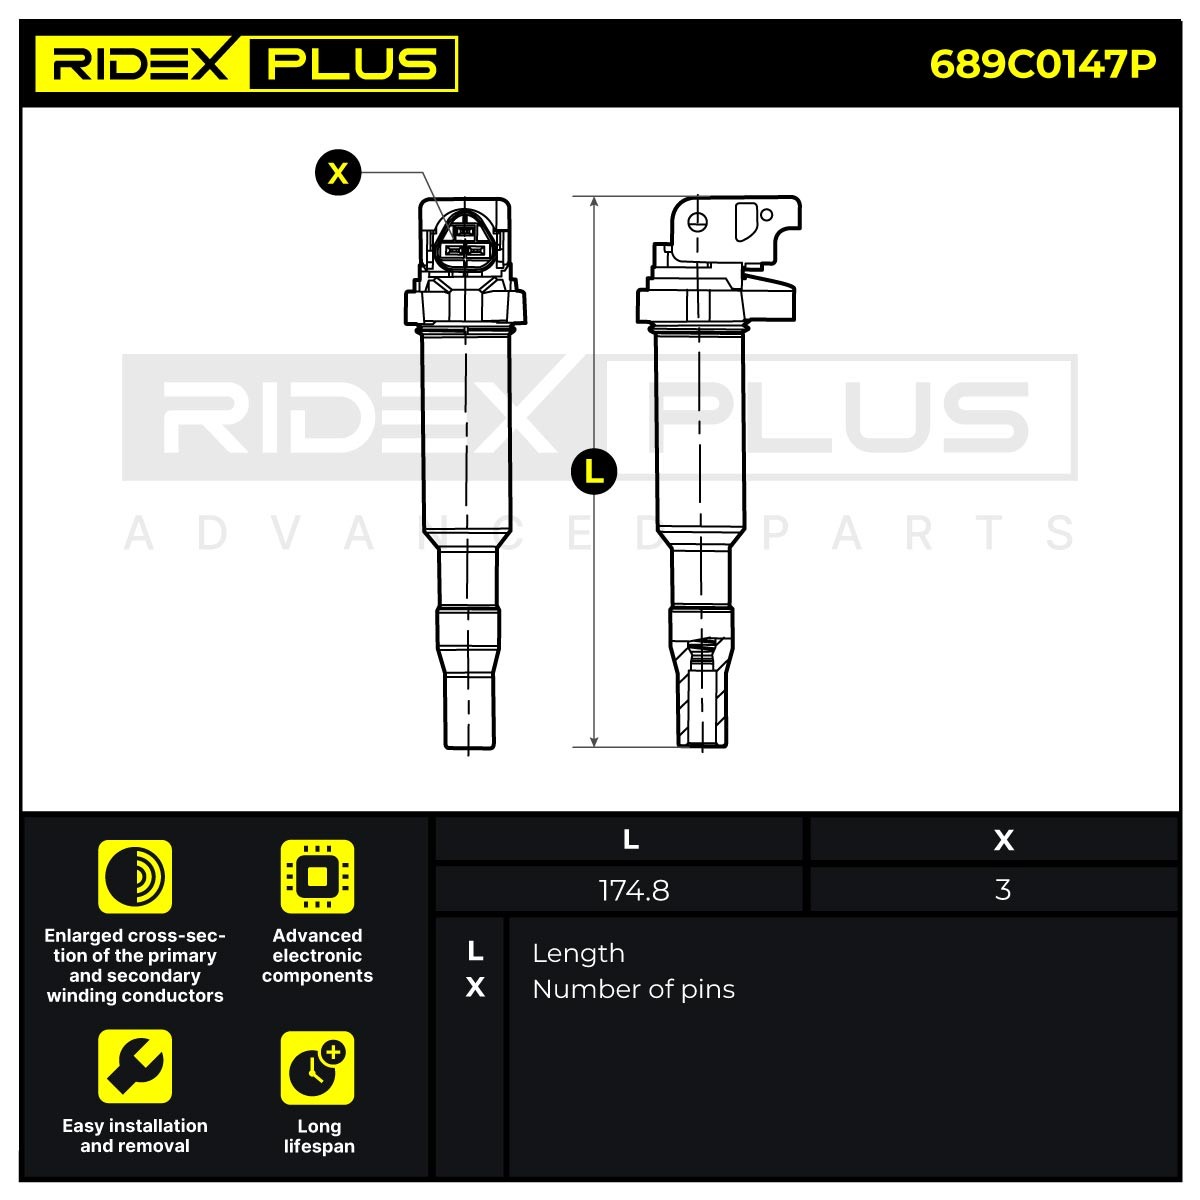 RIDEX PLUS Coil packs 689C0147P